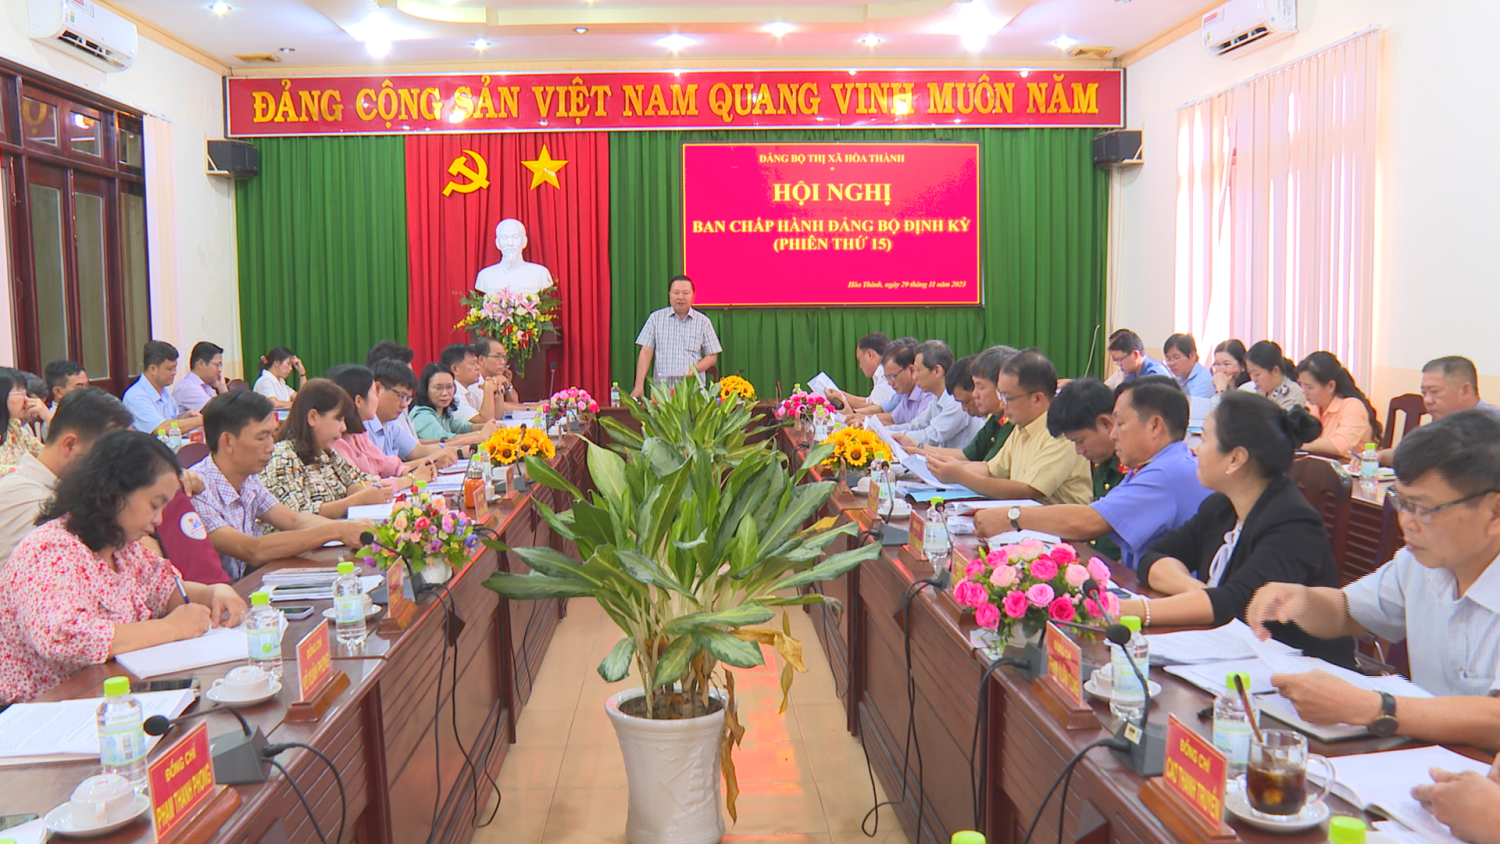 Hội nghị BCH Đảng bộ thị xã Hoà Thành lần thứ 15